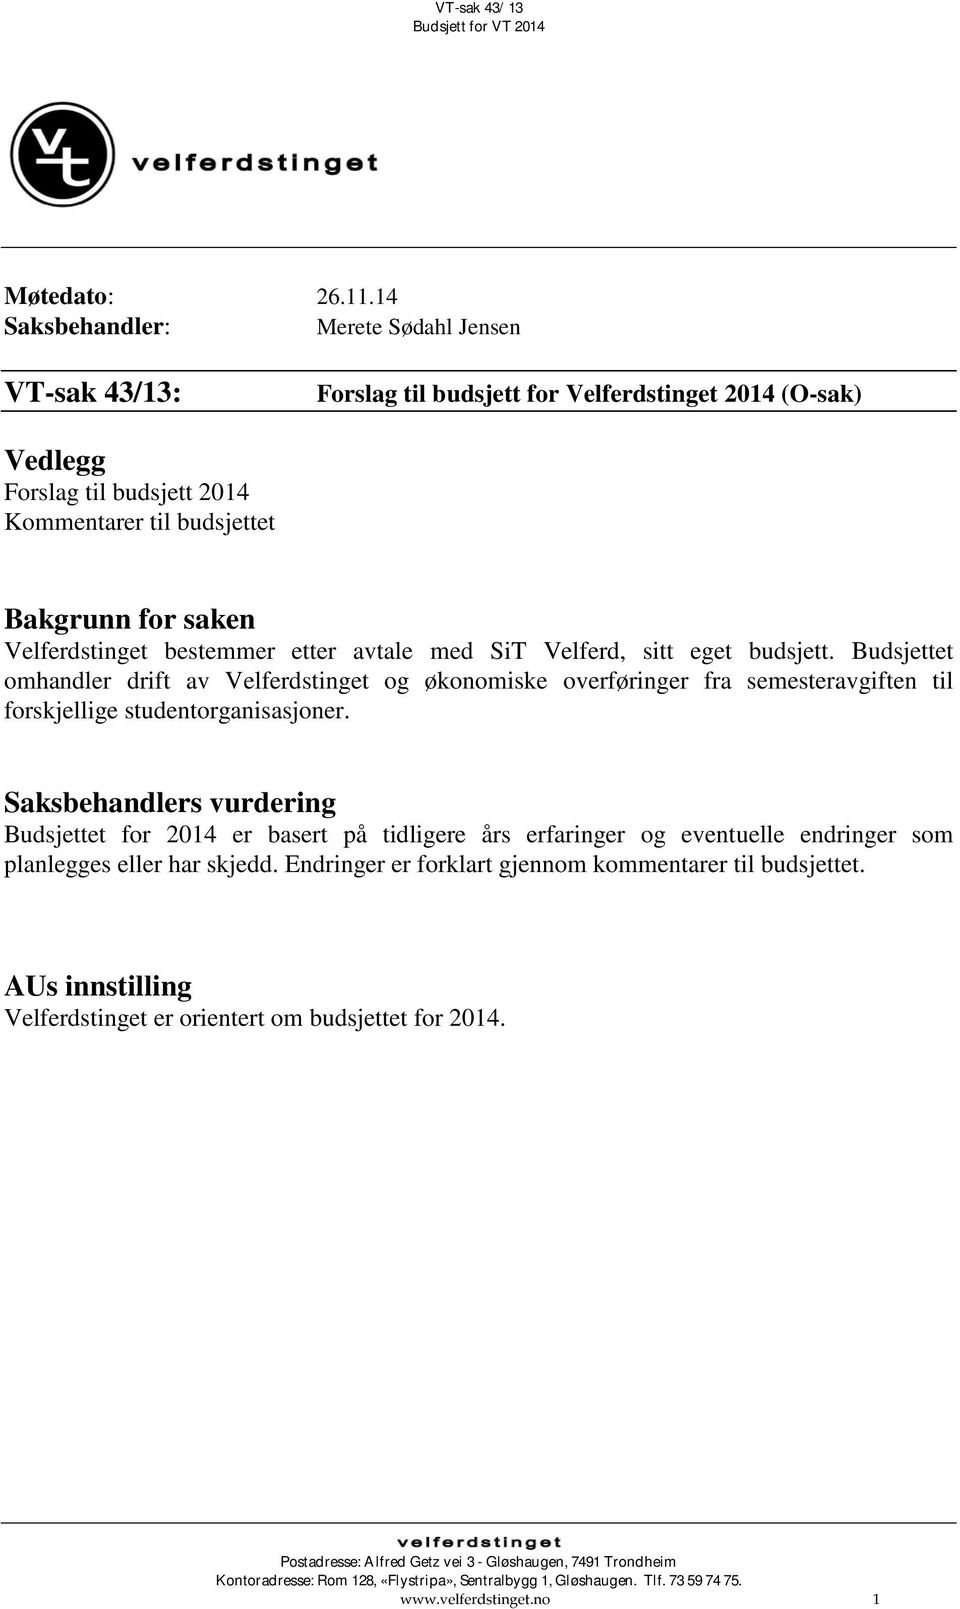 Velferdstinget bestemmer etter avtale med SiT Velferd, sitt eget budsjett.